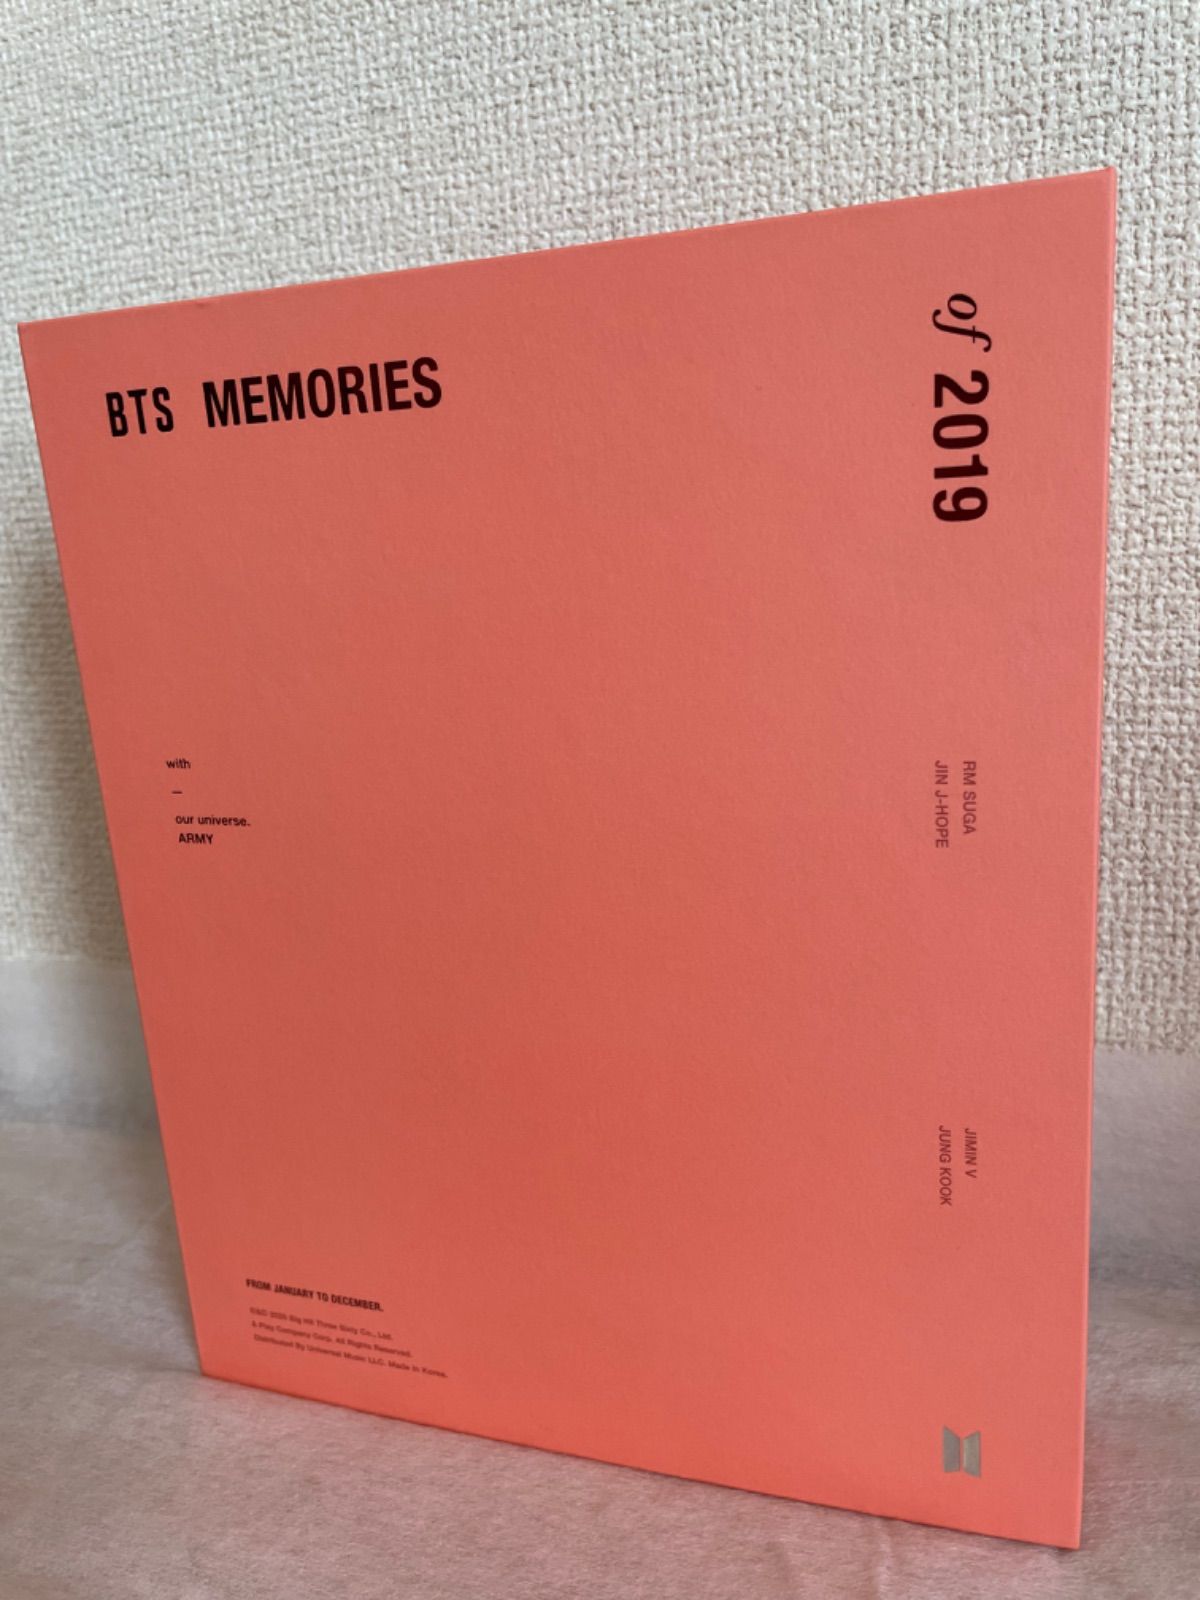 BTS2019MEMORIES DVD トレカ無し - ブルーレイ